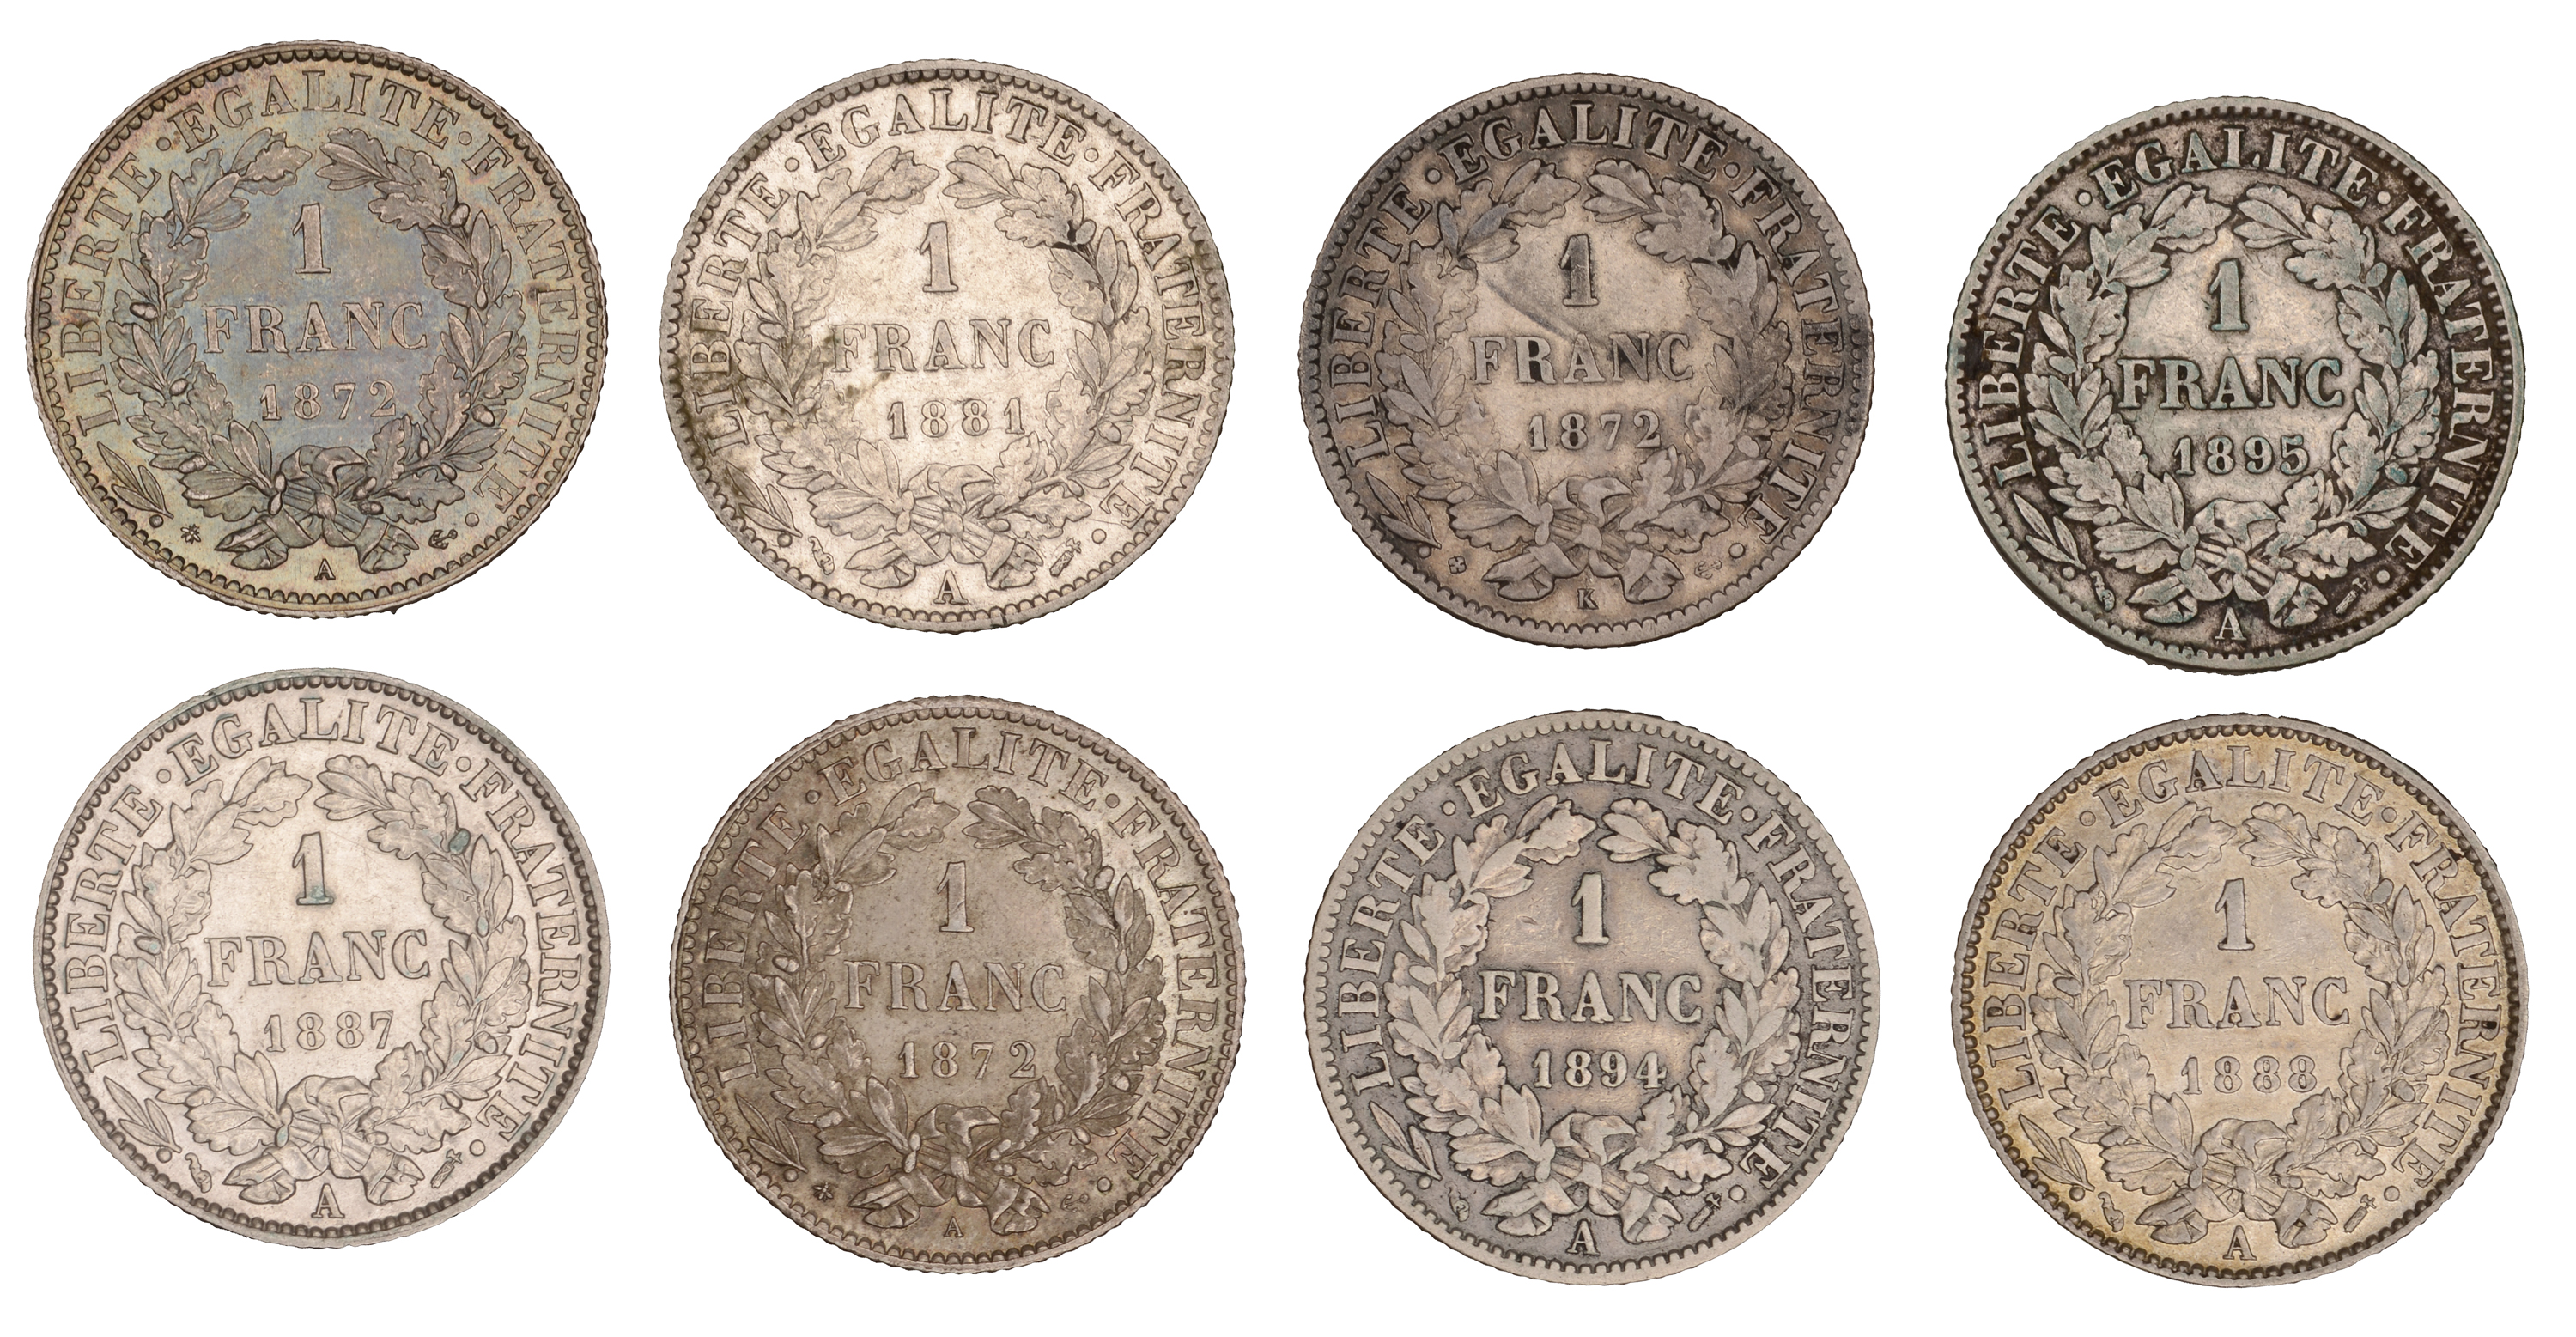 France, Third Republic (1871-1940), Franc (8), 1872a (2), 1872k, 1881a, 1887a, 1888a, 1894a,... - Image 2 of 2